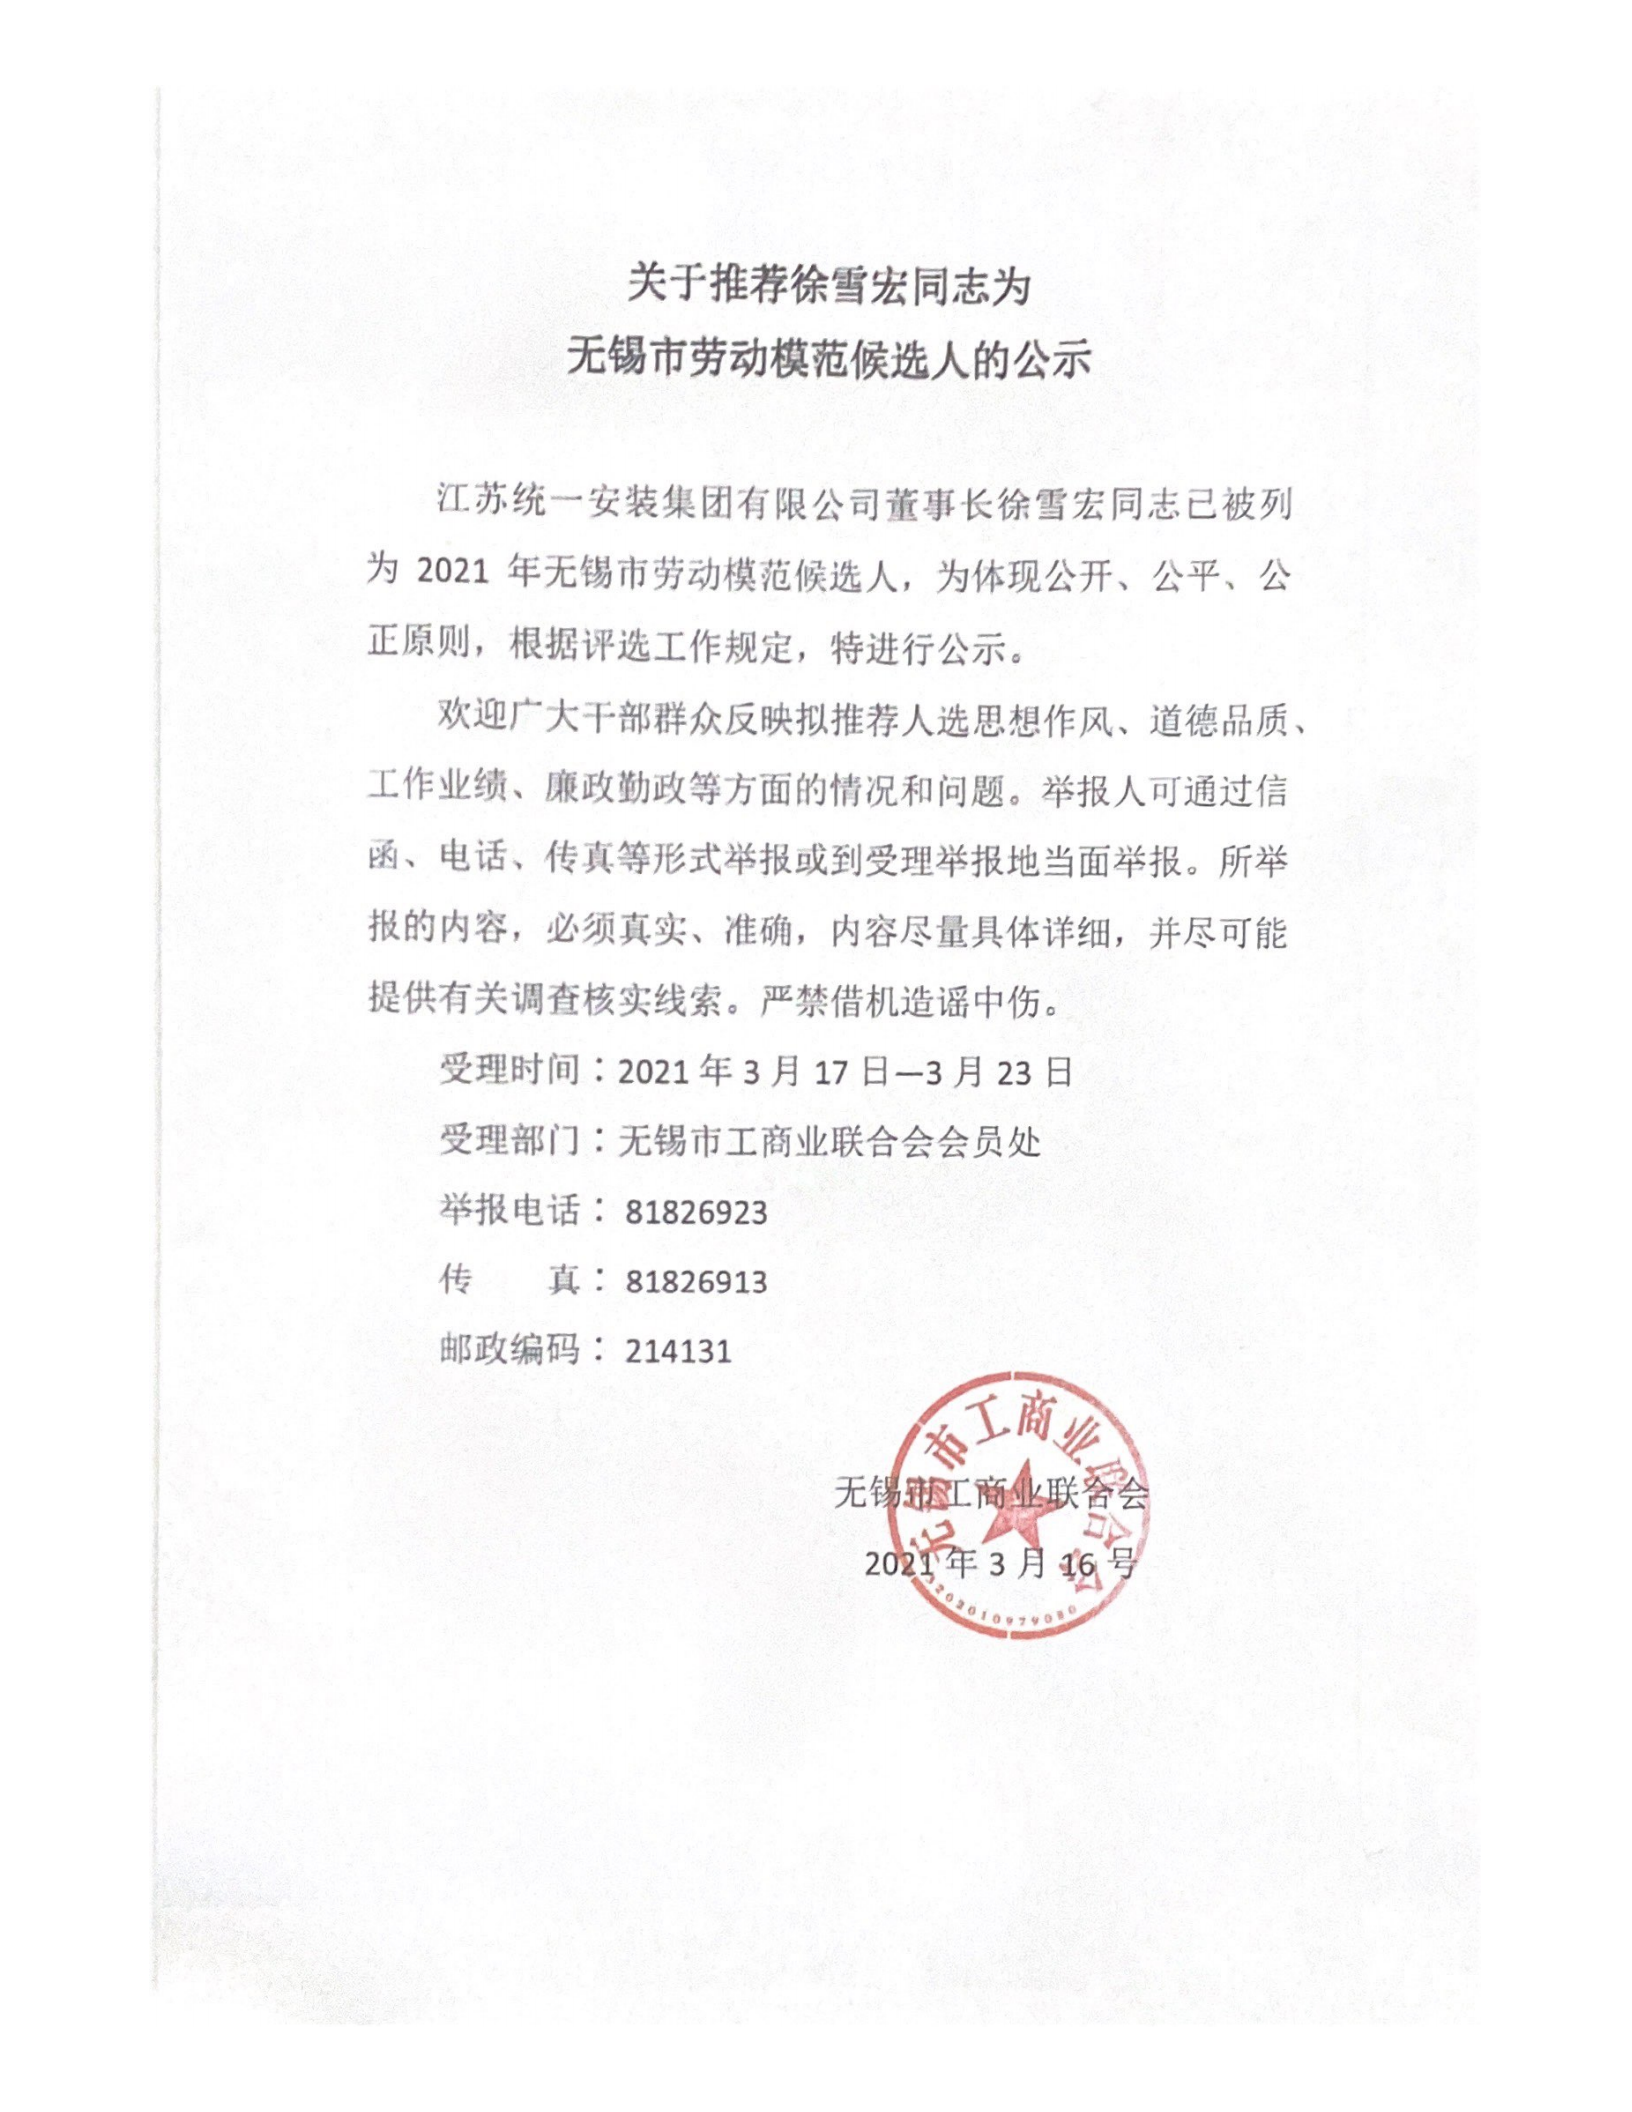 关于推荐徐雪宏为无锡劳模候选人的公示